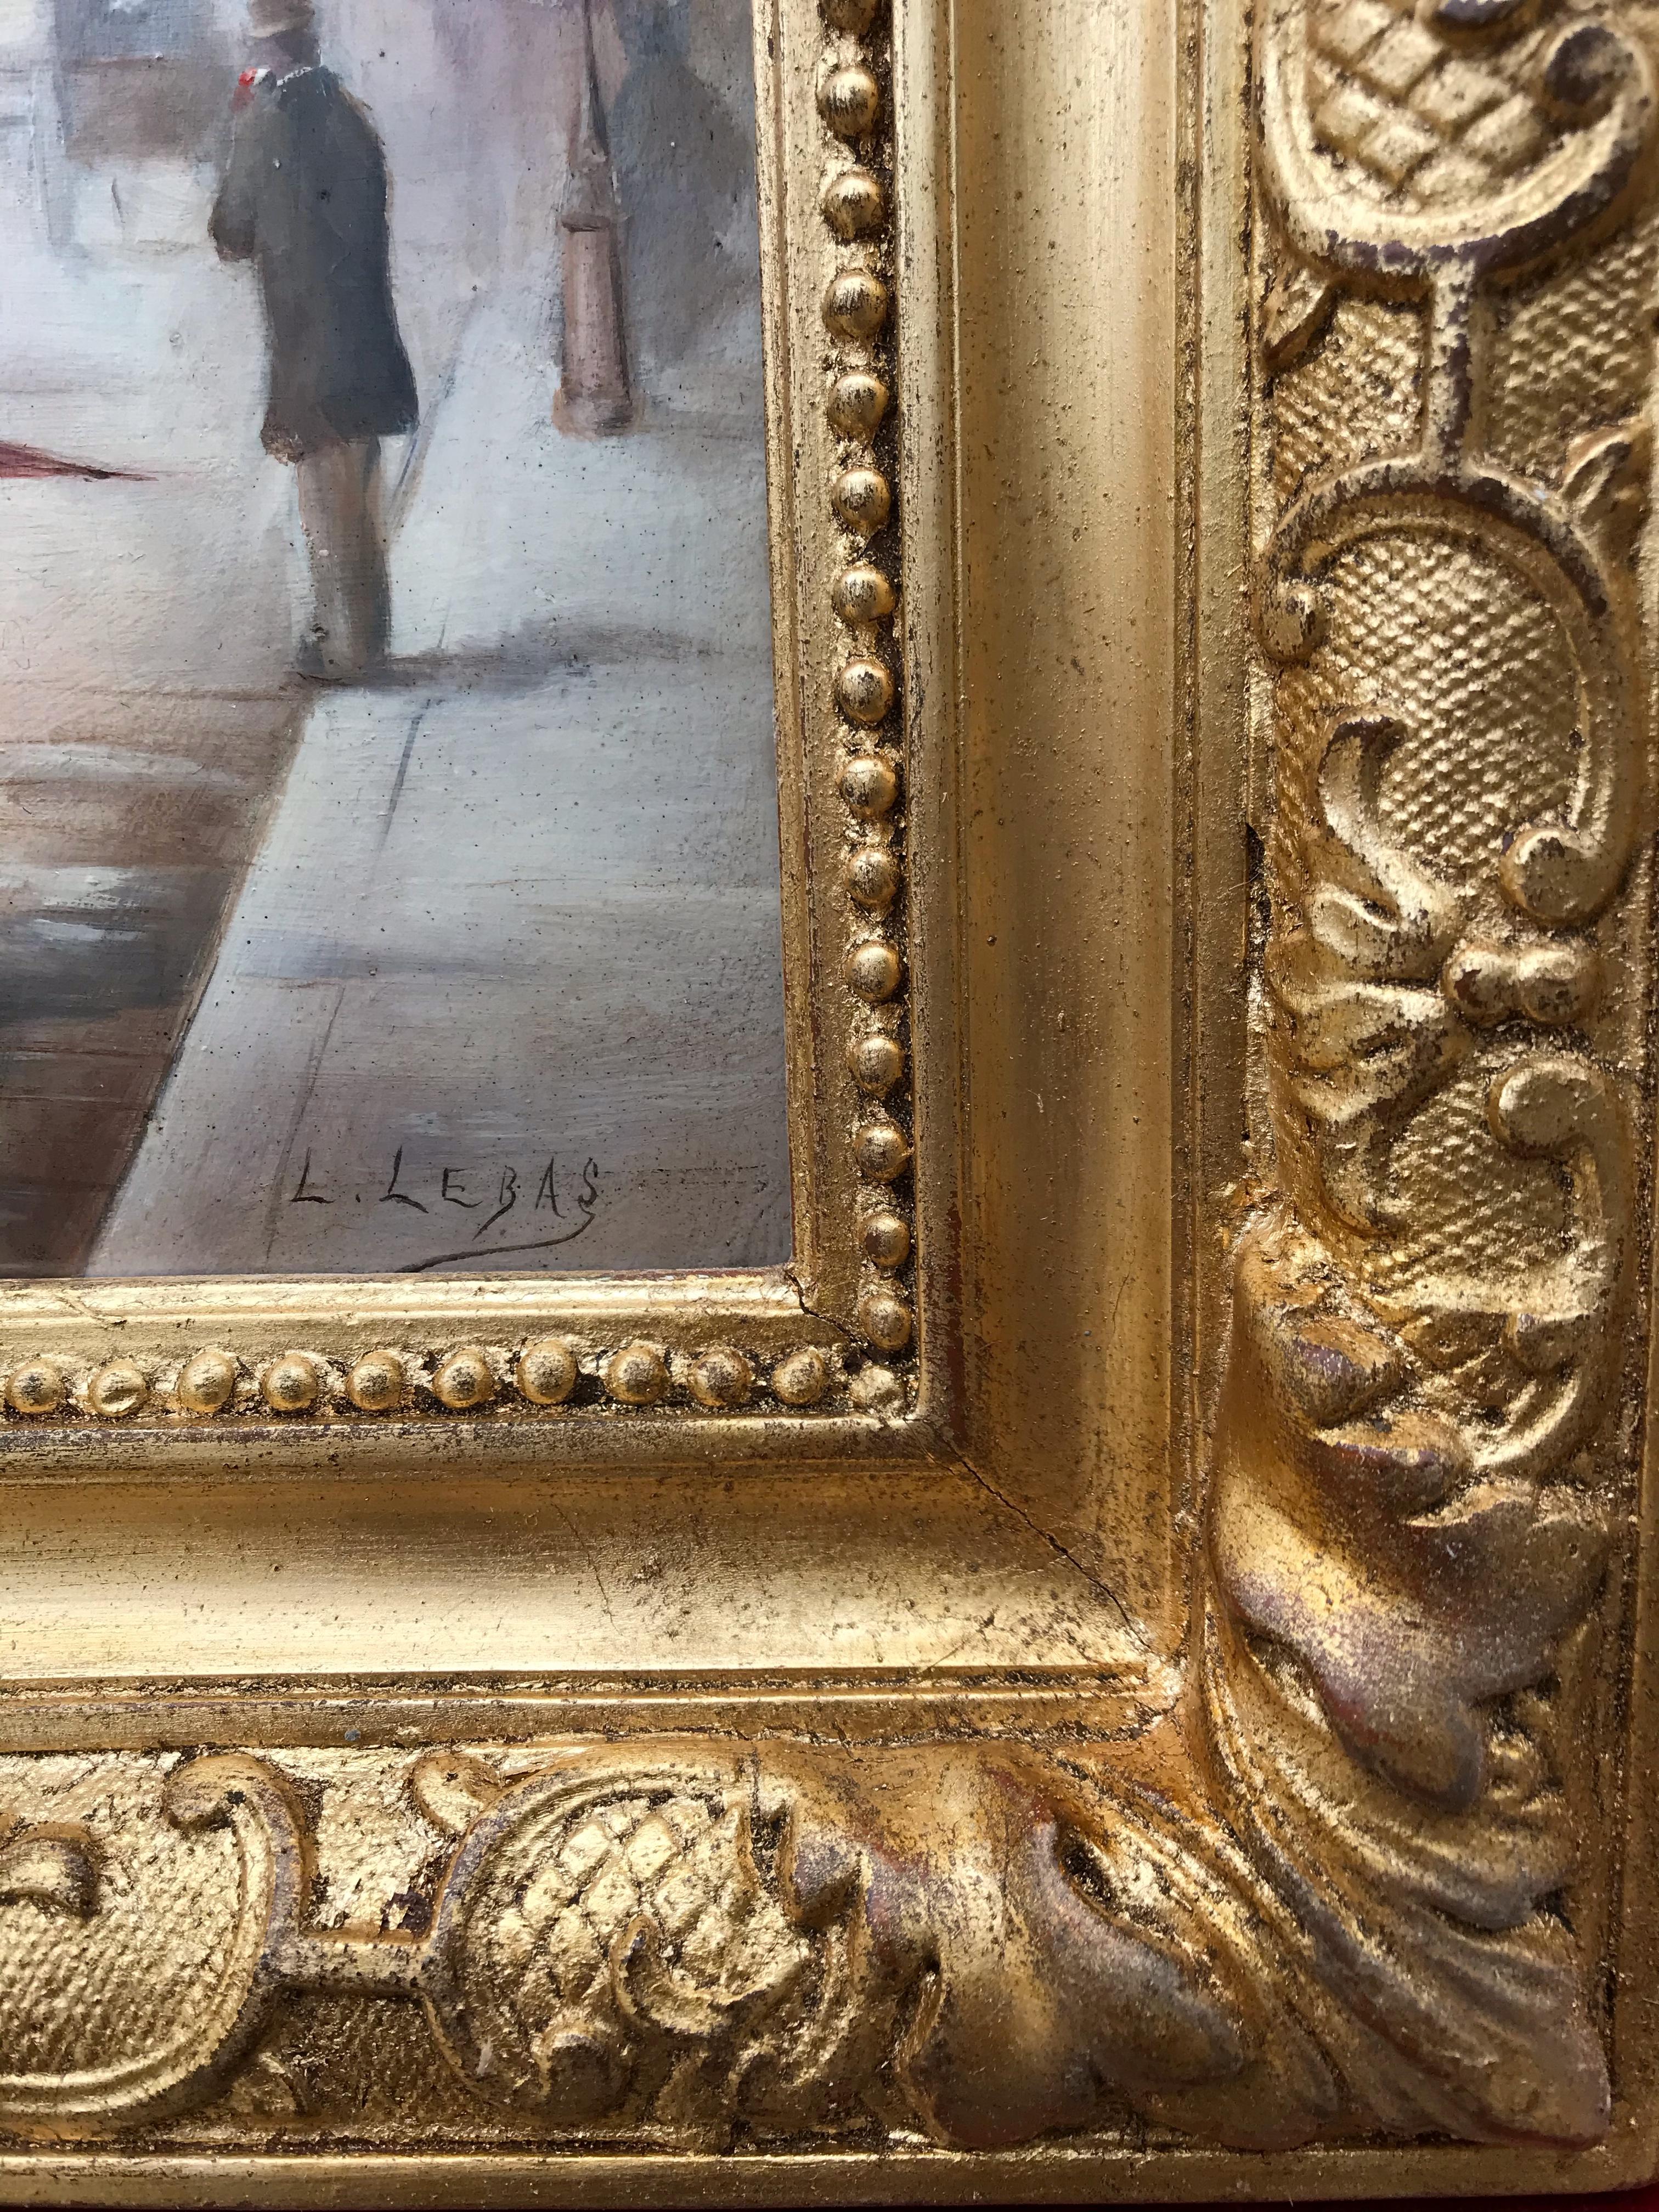 LEBAS Léonie (19th-20th) -
Paris Belle Epoque Genre Scene - 
Oil on wood in pair - 
Copper leaf frames. Wood Dim (each) : 22 X 16 cm - Dim frame (each) : 37 X 31 cm -
For sale in pair. 

LEBAS Léonie French Painter 19th-20th century. Genre painter,